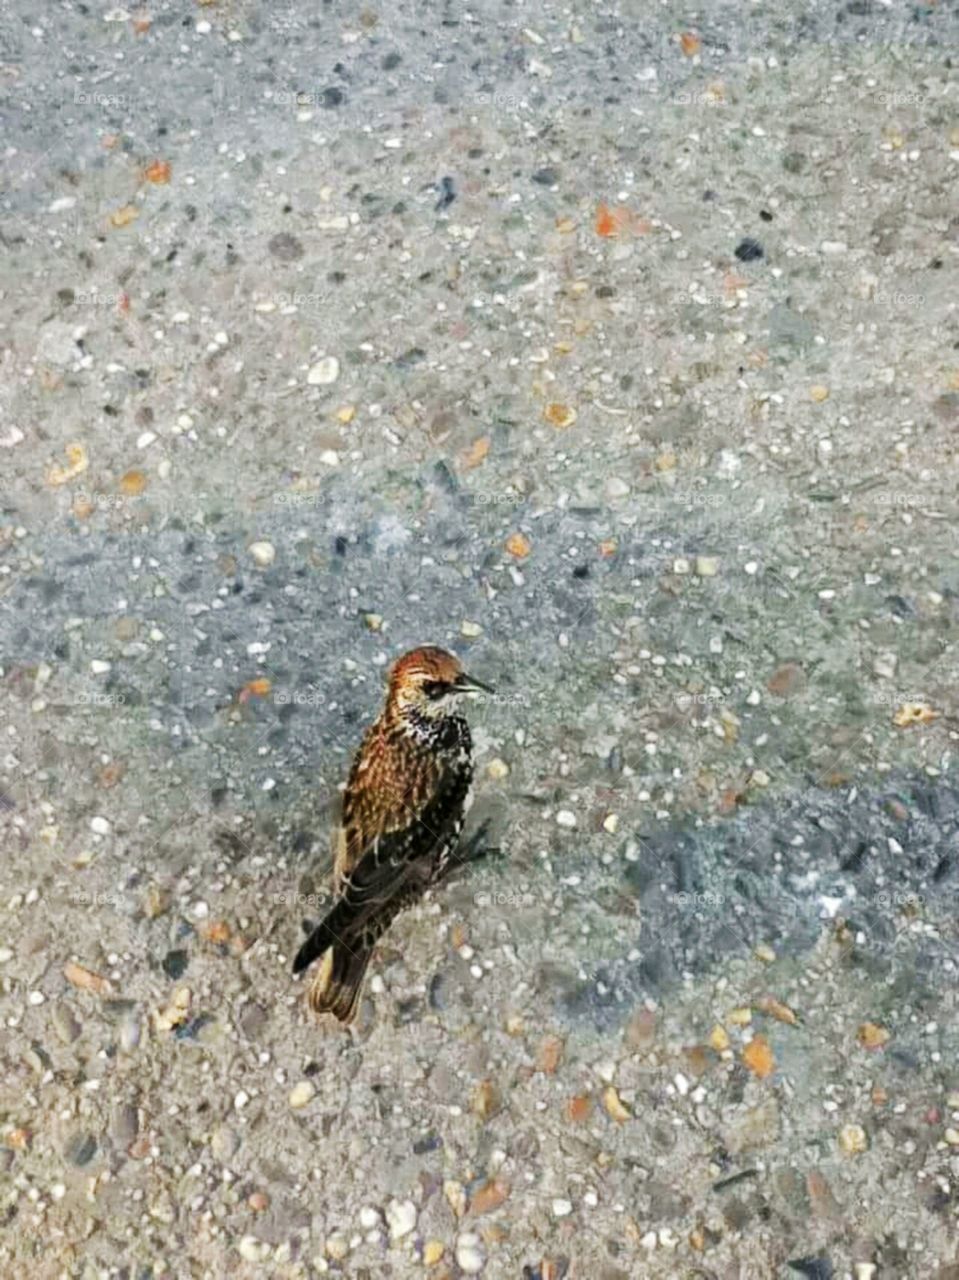 Bird on the road